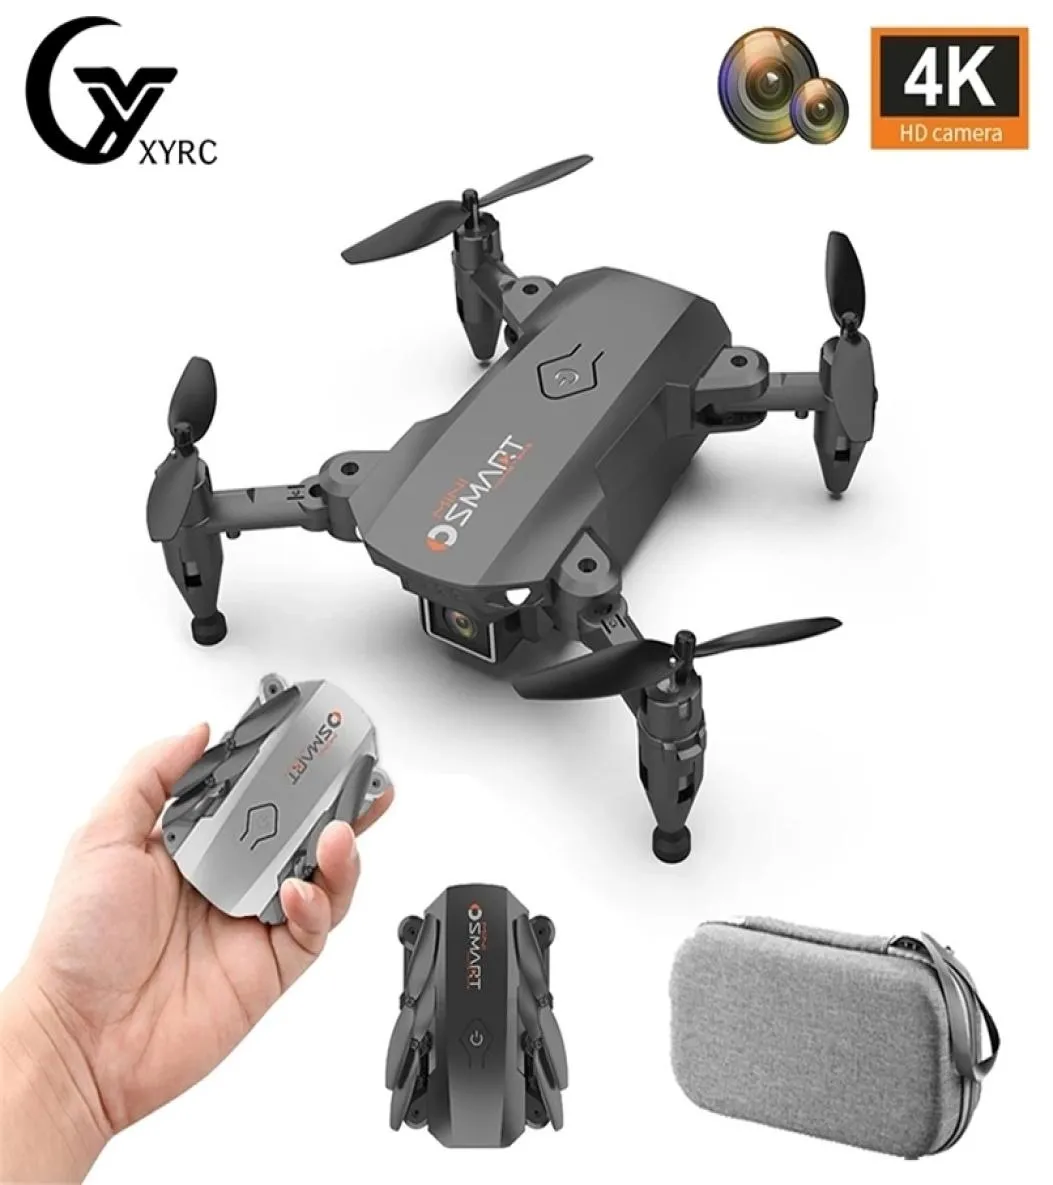 XYRC L23 Mini Drone 4K HD Dual Camera Drönes WiFi FPV Höjd Håll liten vikbar quadcopter RC Dron Toy for Children Boy Gift 22043937097